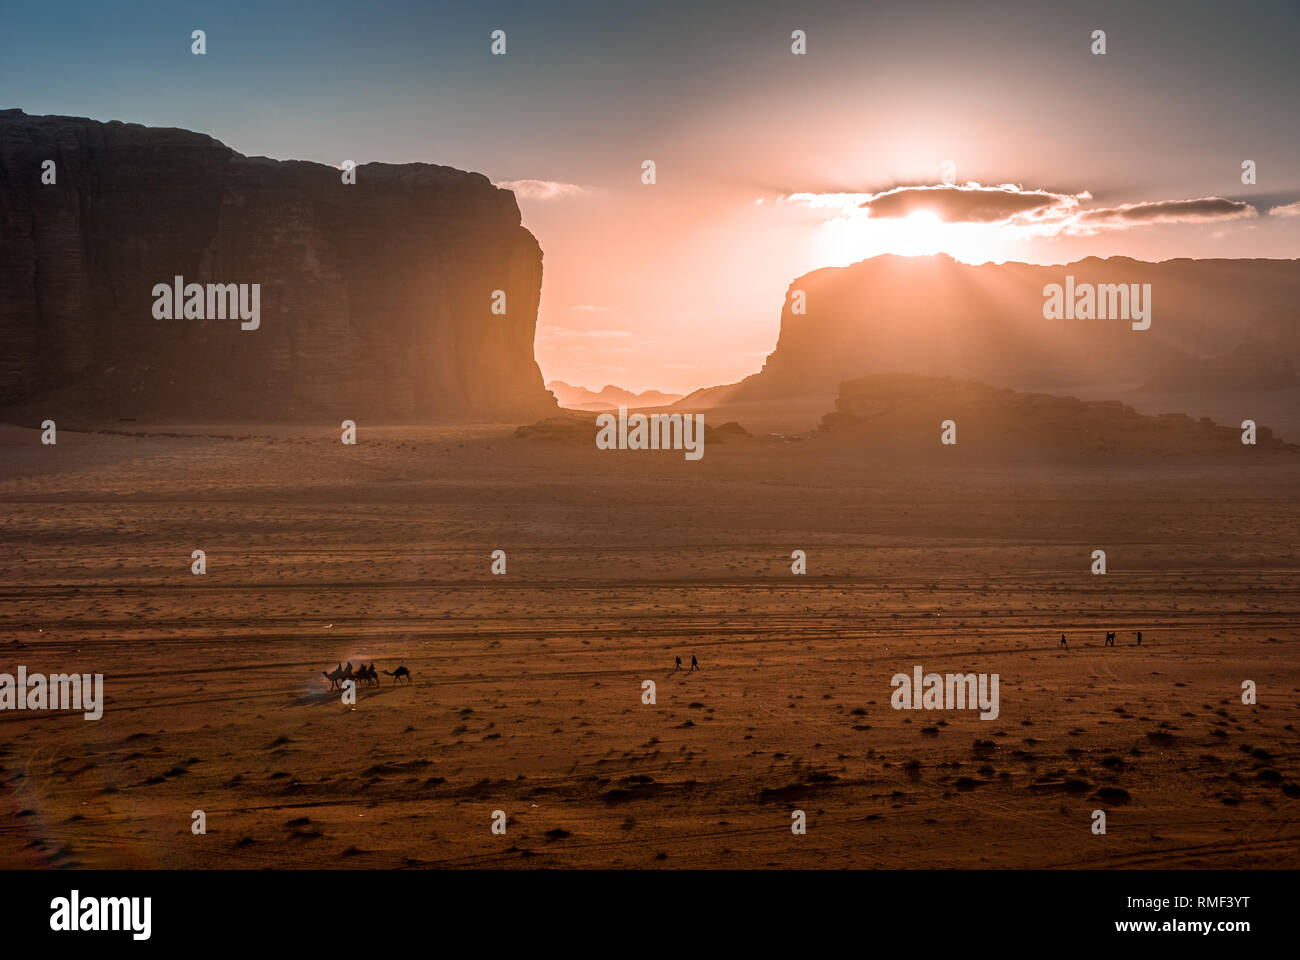 Sunset over the desert of Wadi Rum, Jordan, Middle East Stock Photo